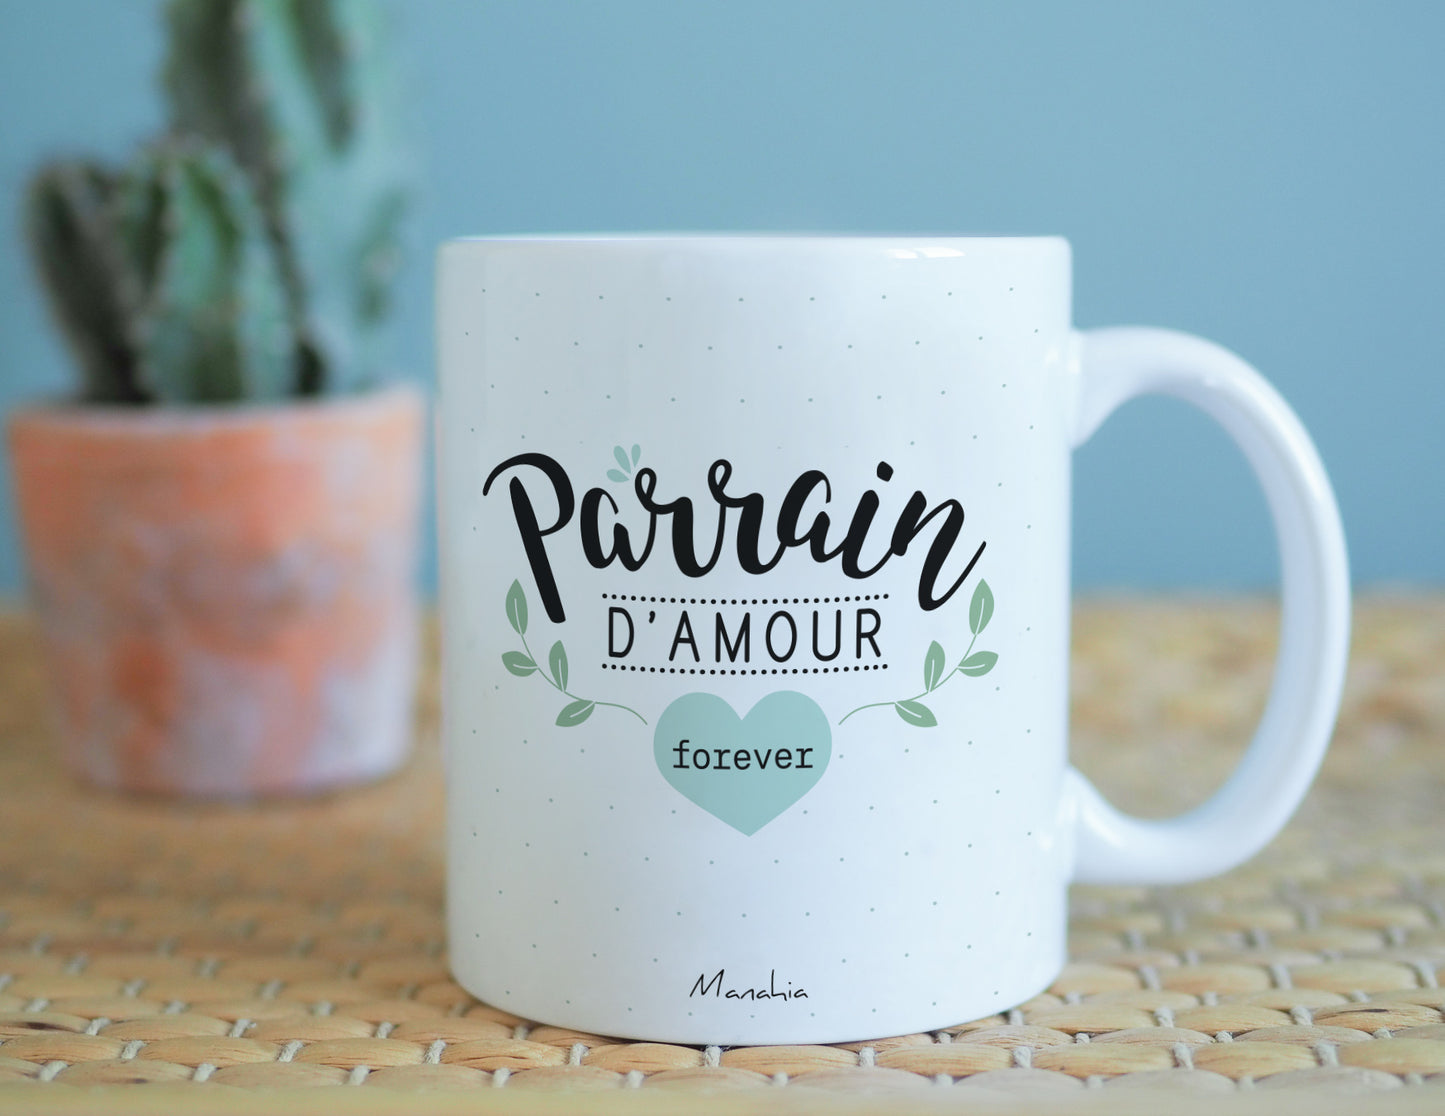 Mug - Parrain d'amour forever